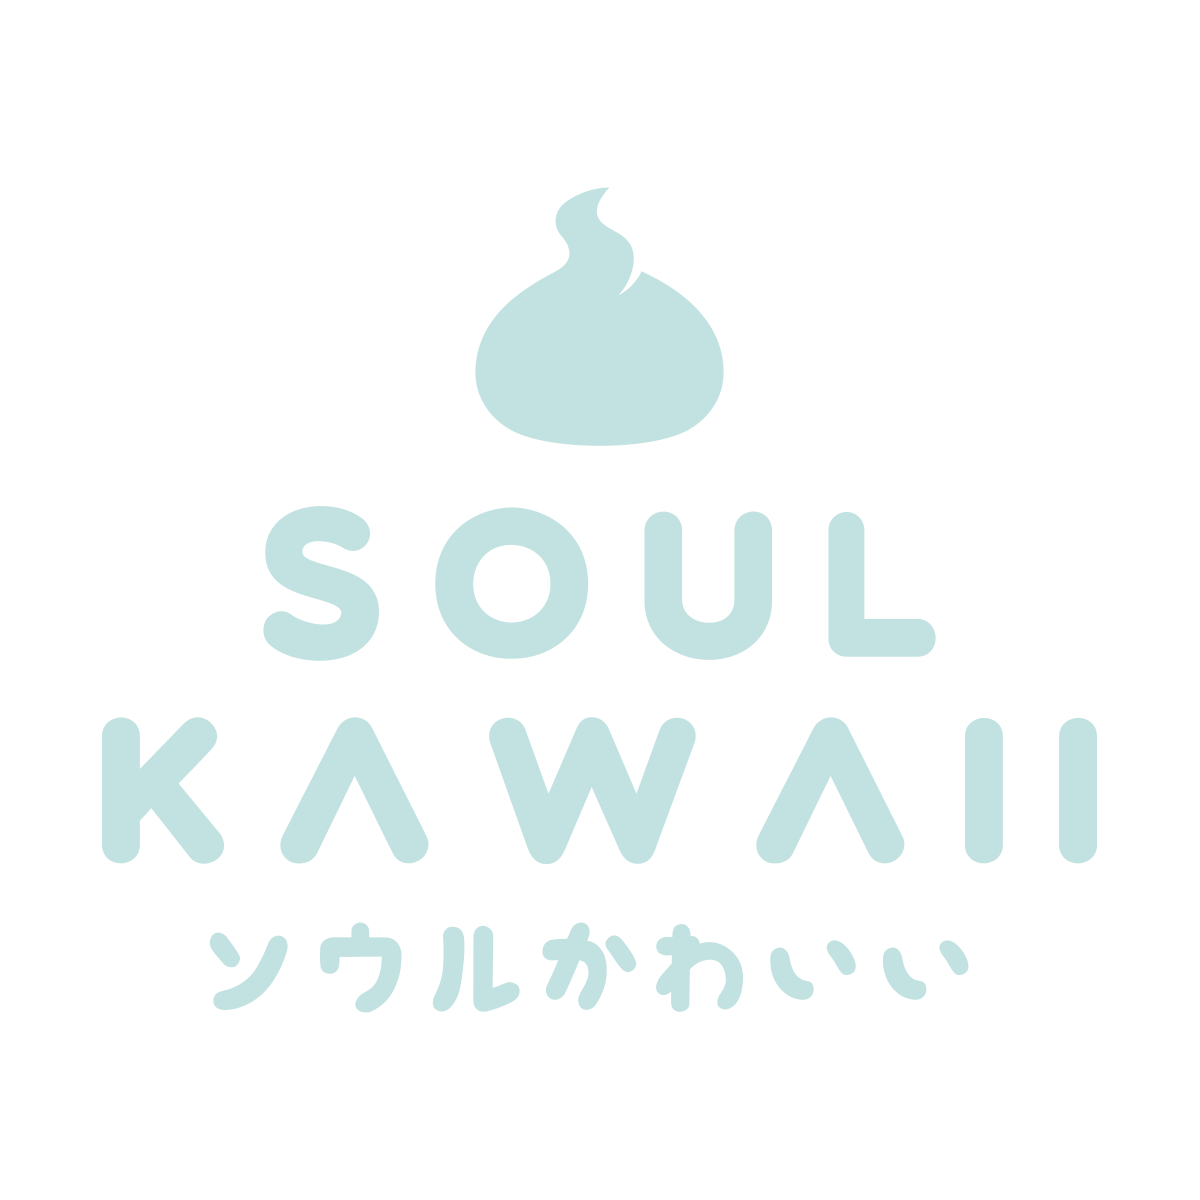 Soul Kawaii